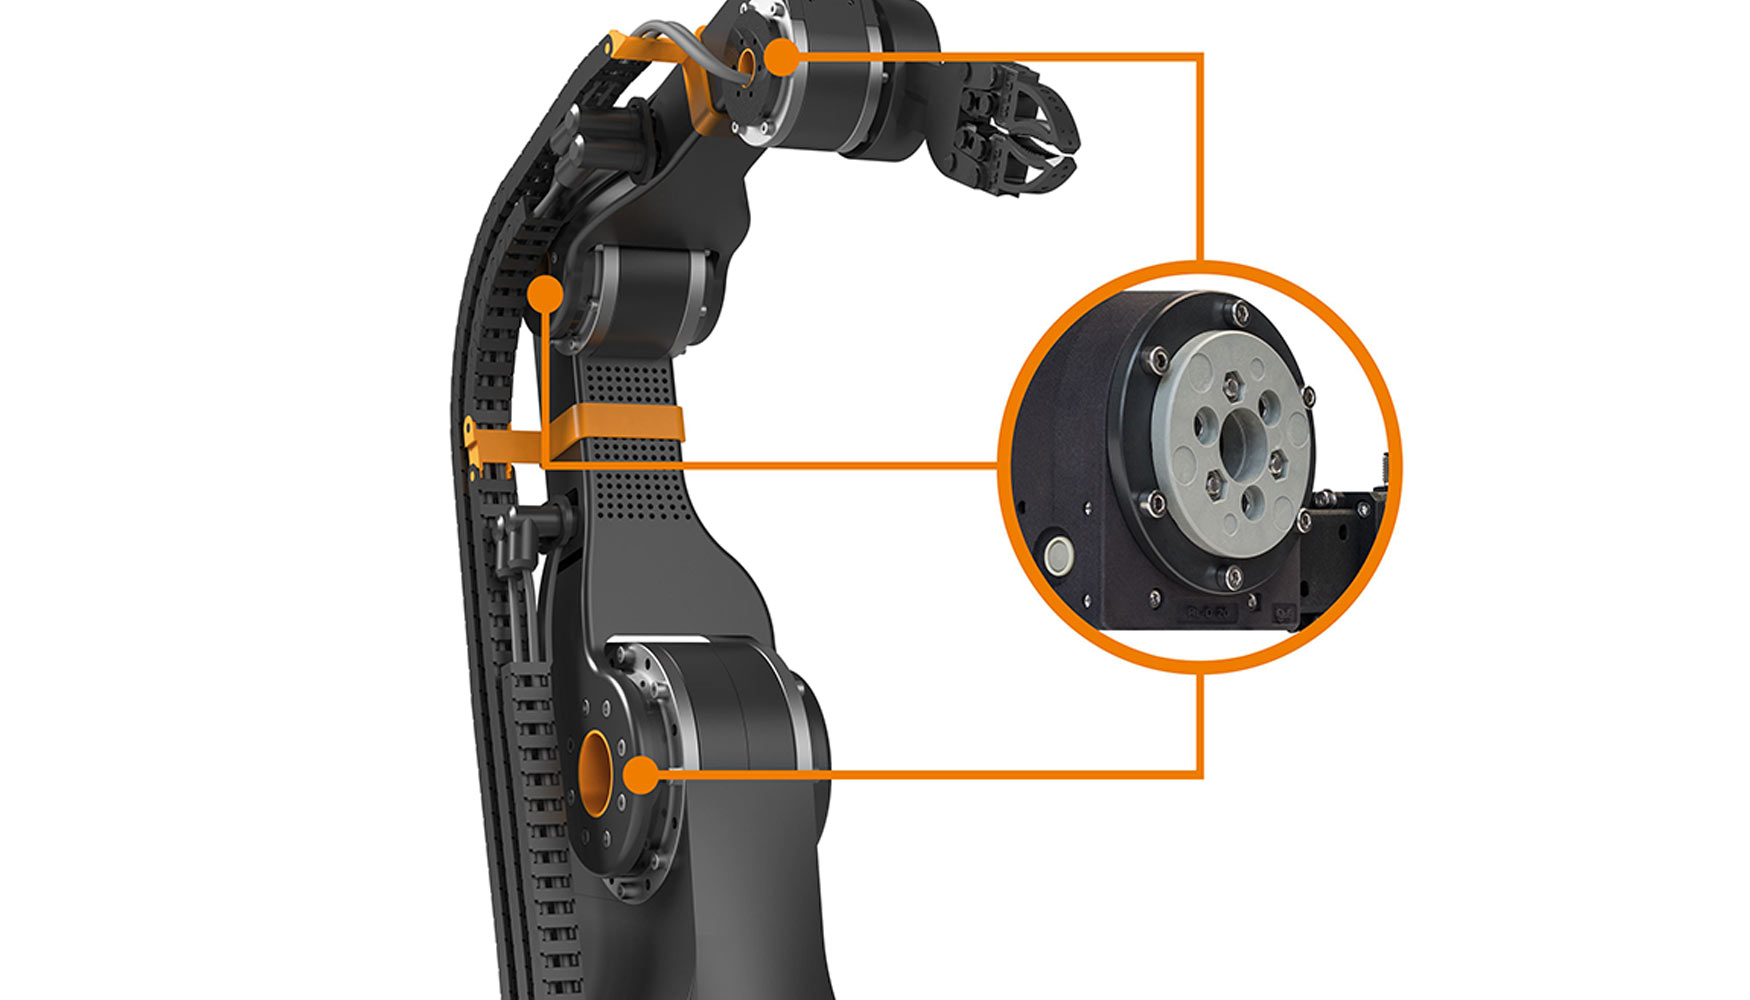 El brazo articulado Robolink de Igus le permite al usuario implementar sistemas robotizados econmicos y libres de lubricacin y mantenimiento...